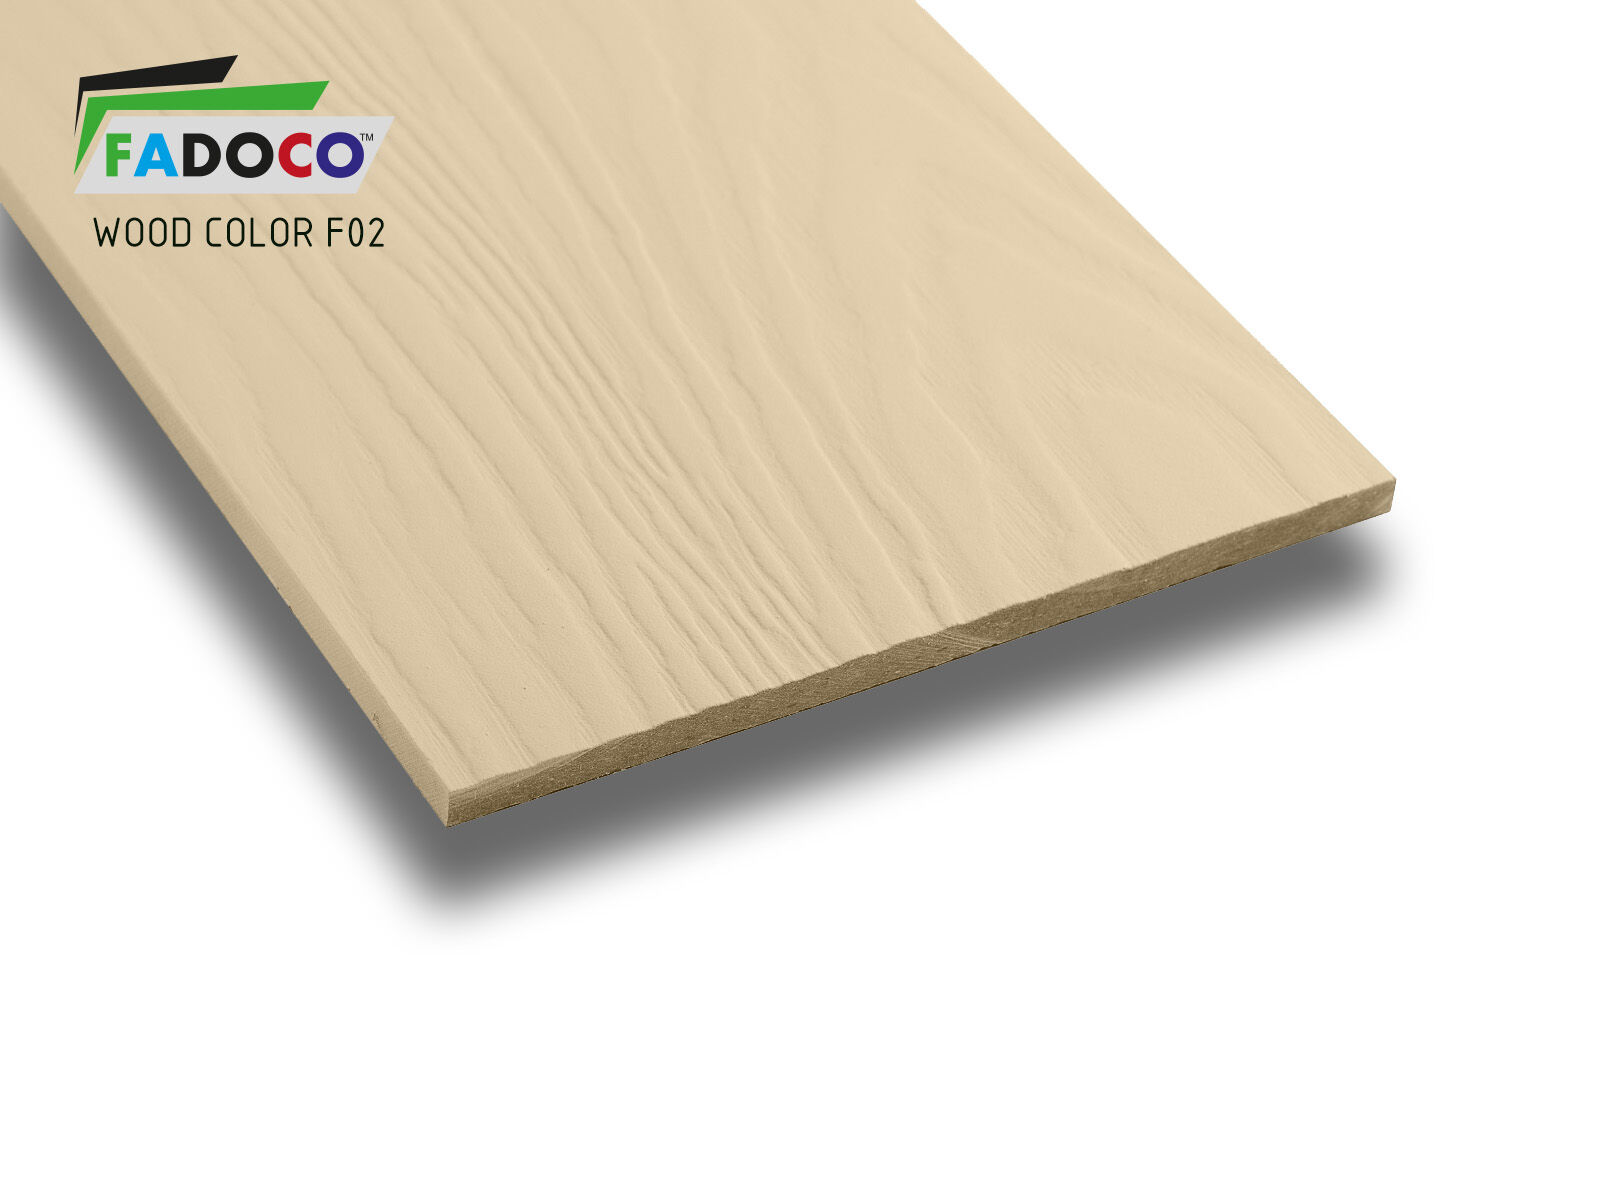 Фибросайдинг FADOCO™ WOOD COLOR 3000x190x8 мм (F02 светлая слоновая кость)